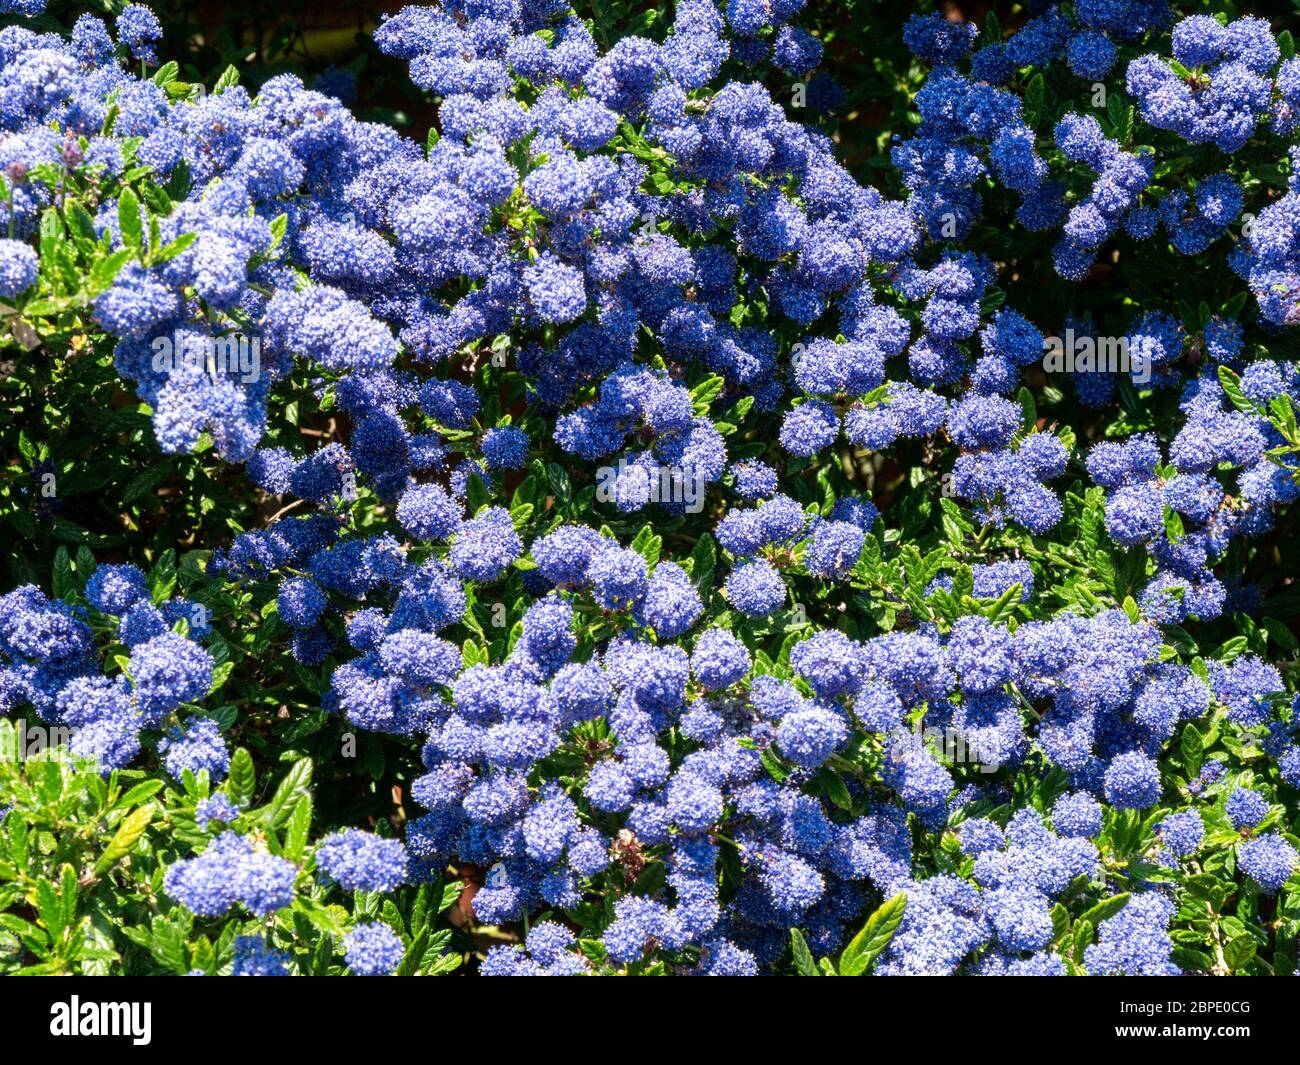 Ceanothus 'Puget Blue', buisson californien de Lilas recouvert de fleurs bleu profond en mai, Leicestershire, Angleterre, Royaume-Uni Banque D'Images